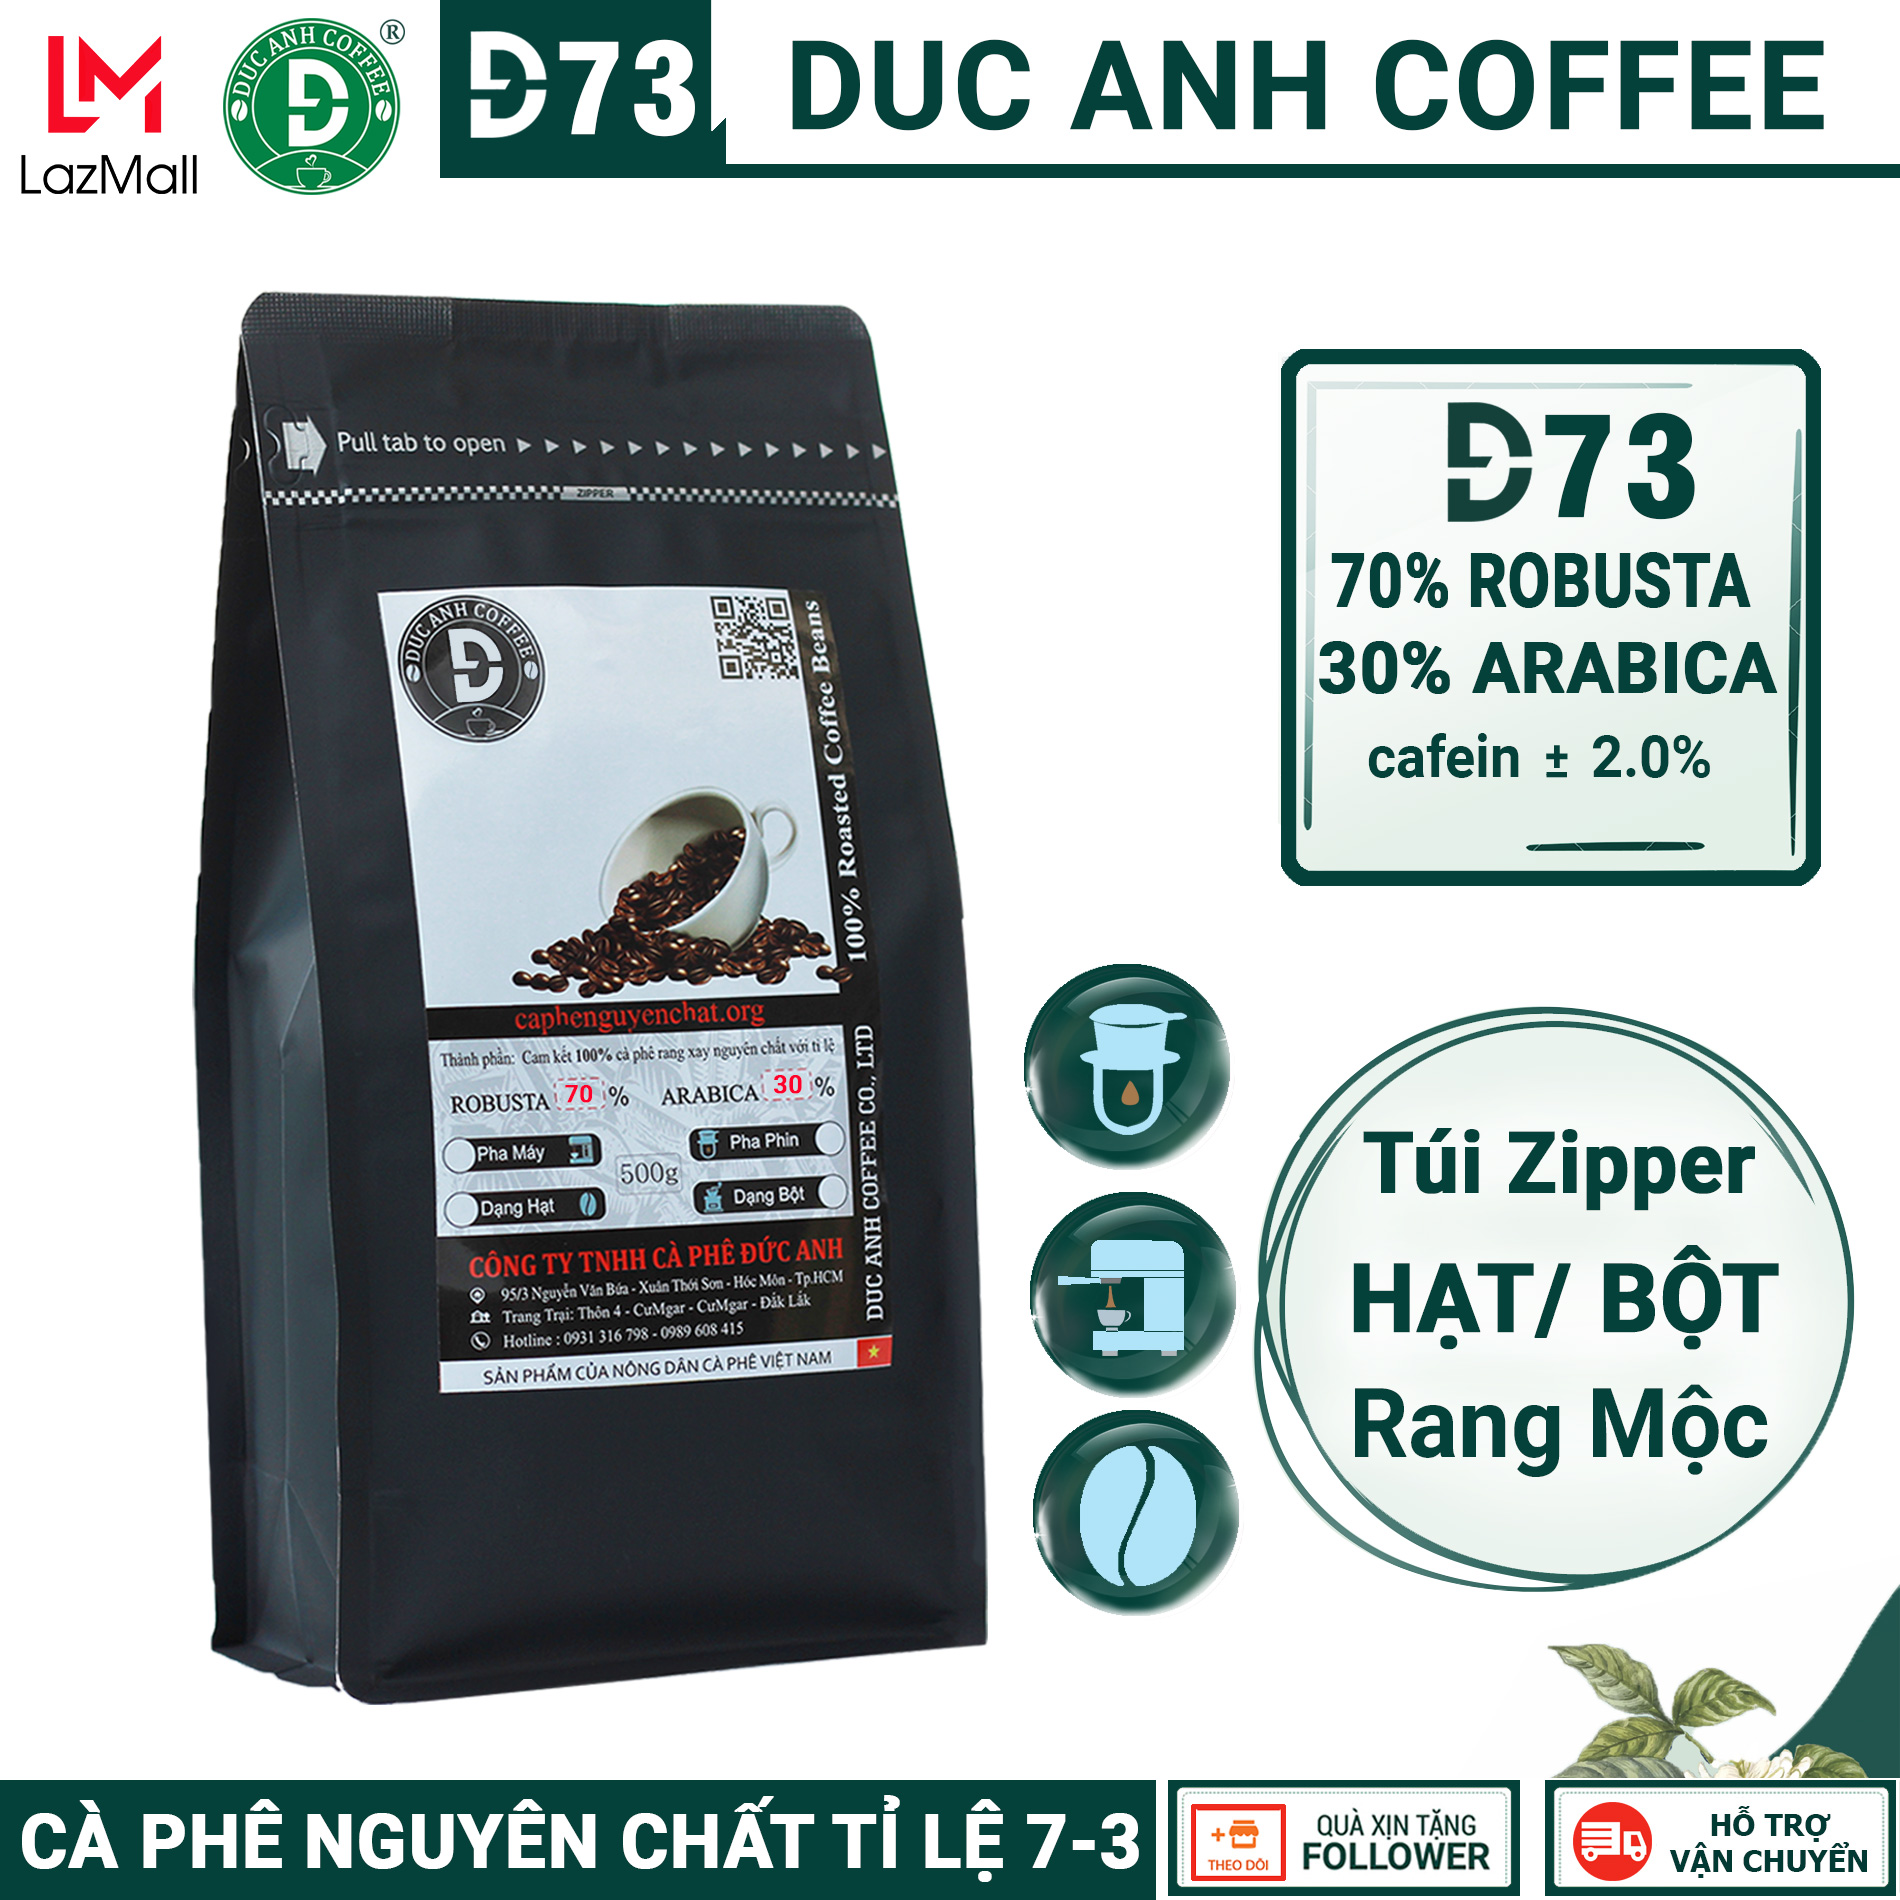 Cà Phê Rang Mộc D73 DUC ANH COFFEENguyên Chất dùng Pha Phin